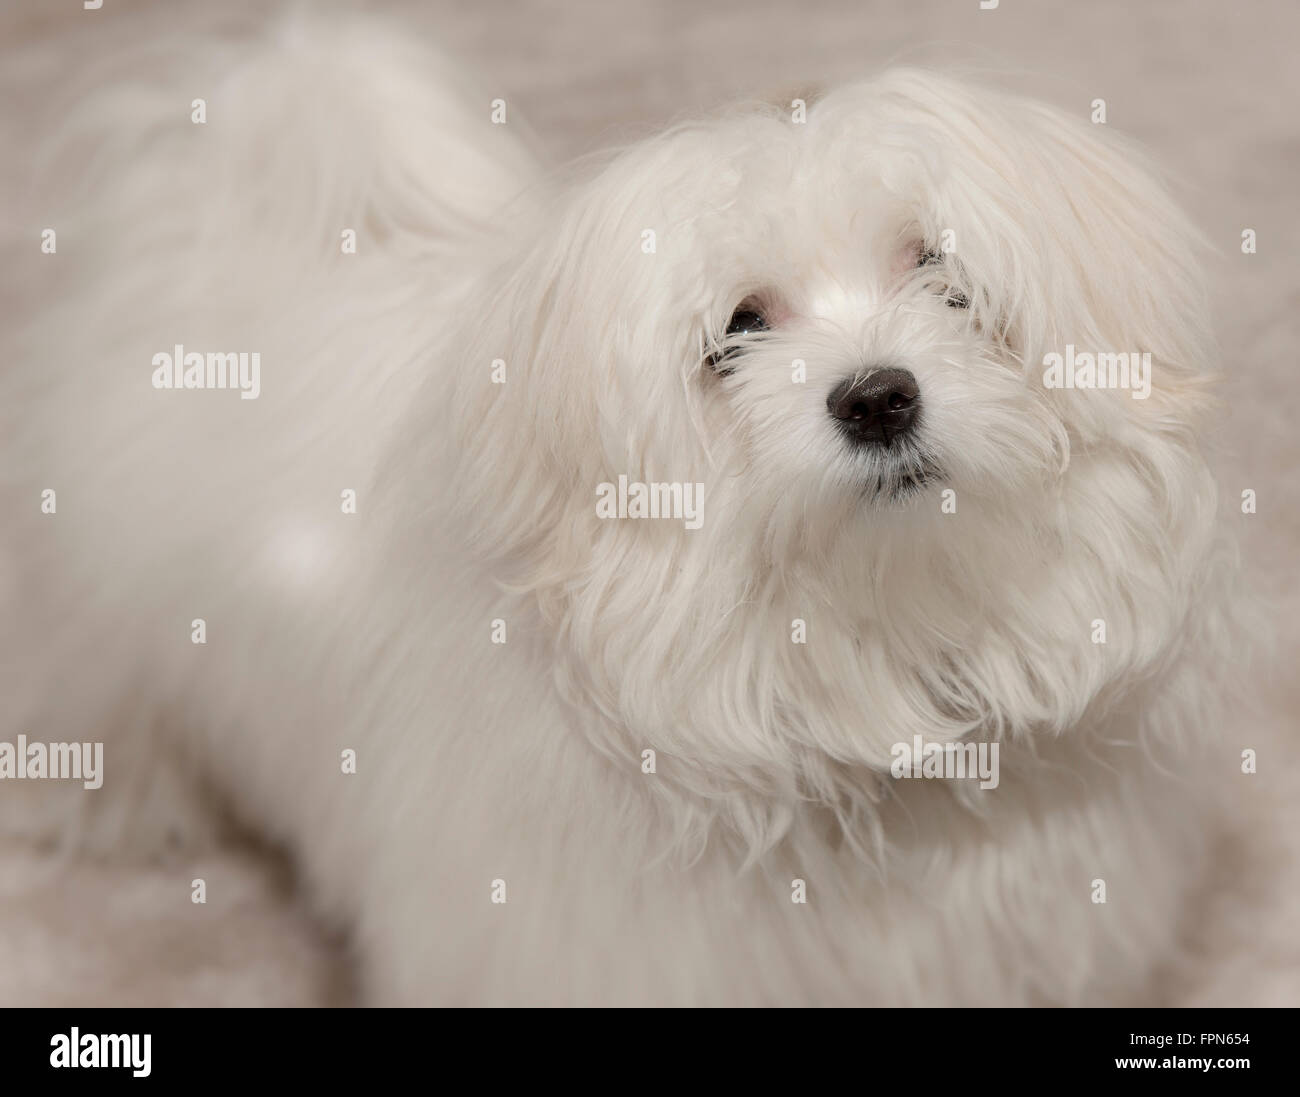 Joven maltesa Pedigree perro mirando hacia arriba con una expresión expectante y alerta Foto de stock